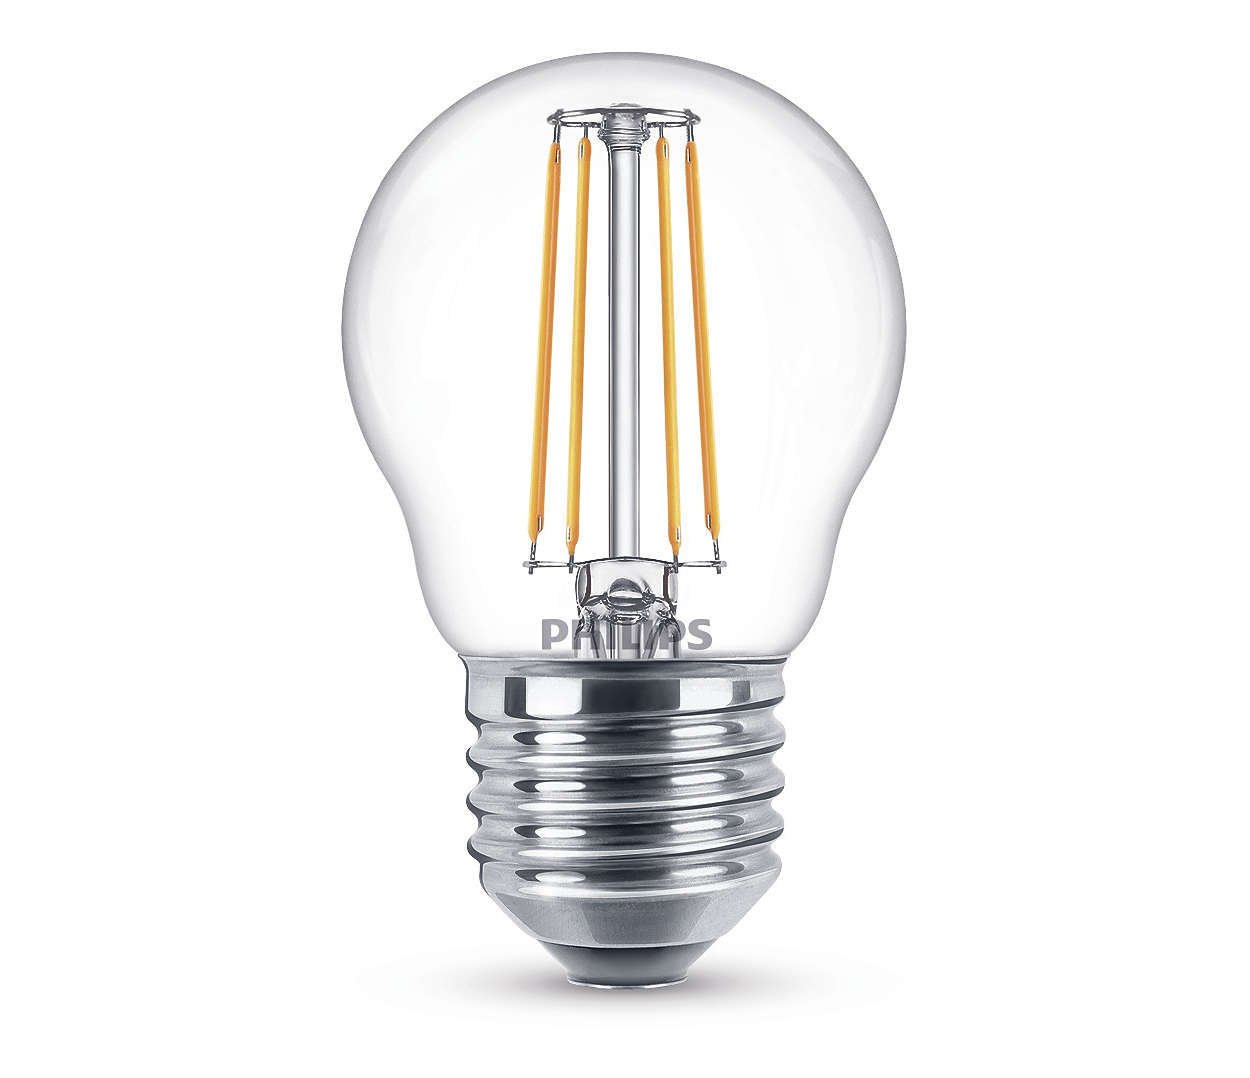 Dekoratyvinė šviesos diodų lemputė PHILIPS, P45, 4 W, E27, 470 lm, 2700K, atitinka 40 W